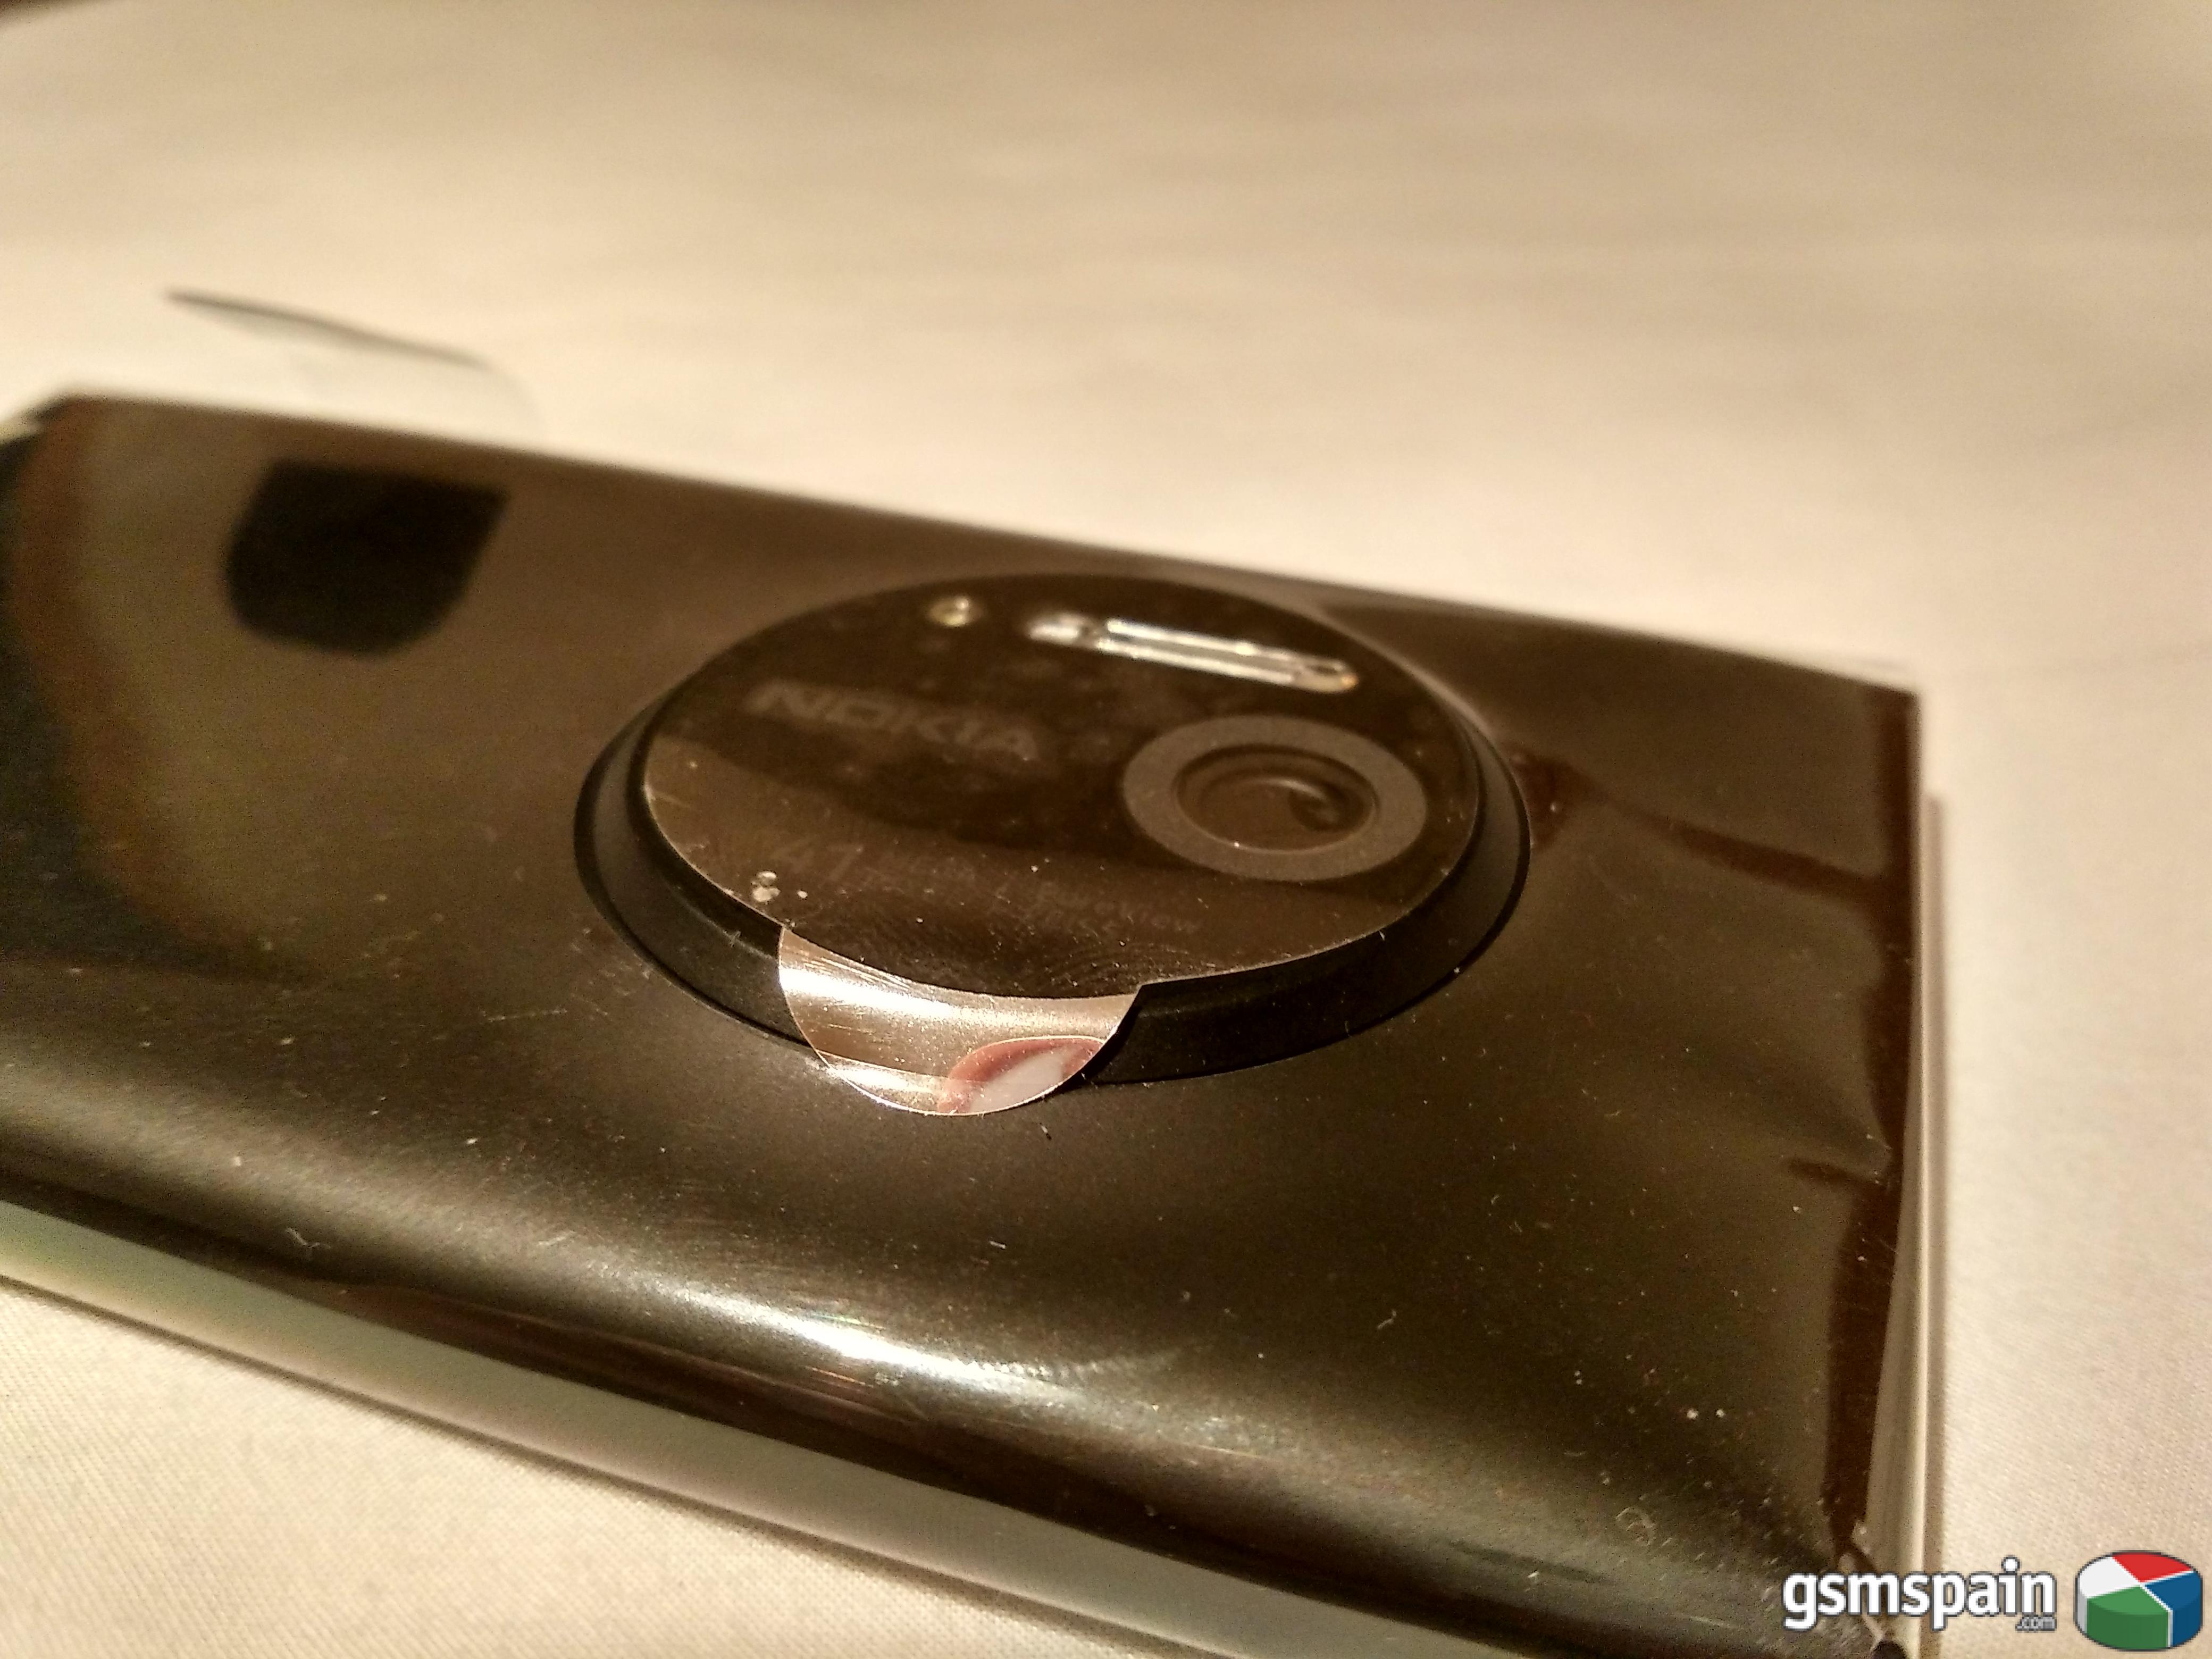 [VENDO] Lumia 1020 negro, a estrenar. La bestia de 41 Mpx!